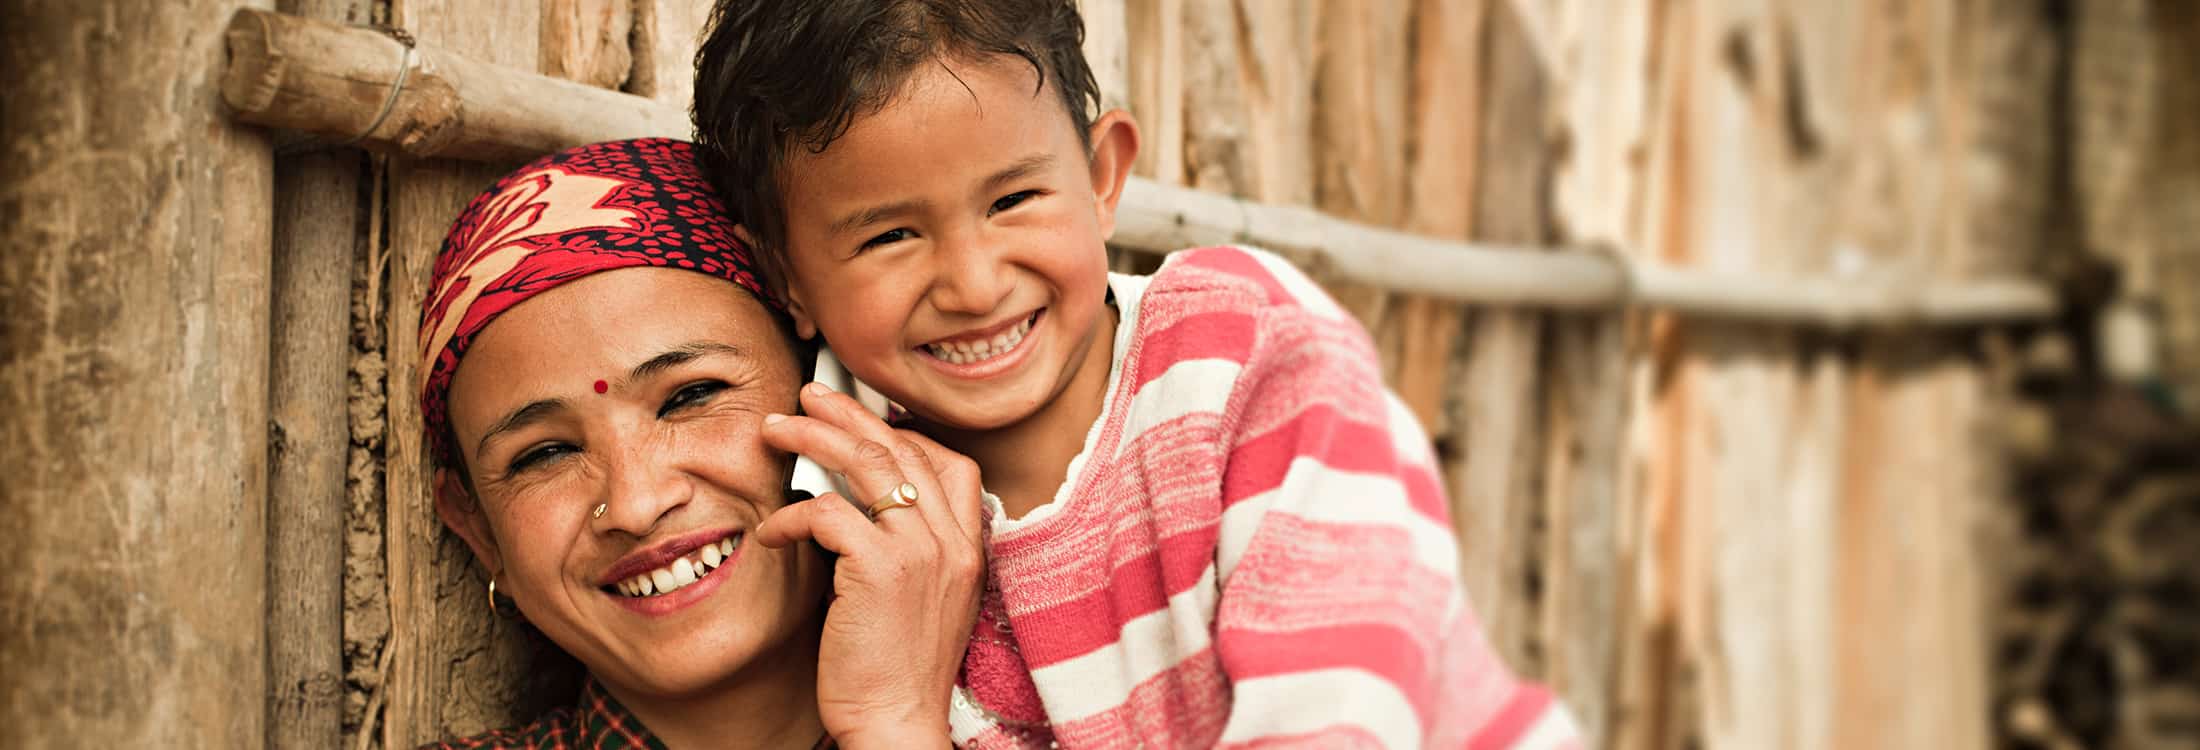 Envie dinheiro aos seus entes queridos no Nepal - rápido e seguro com sendvalu